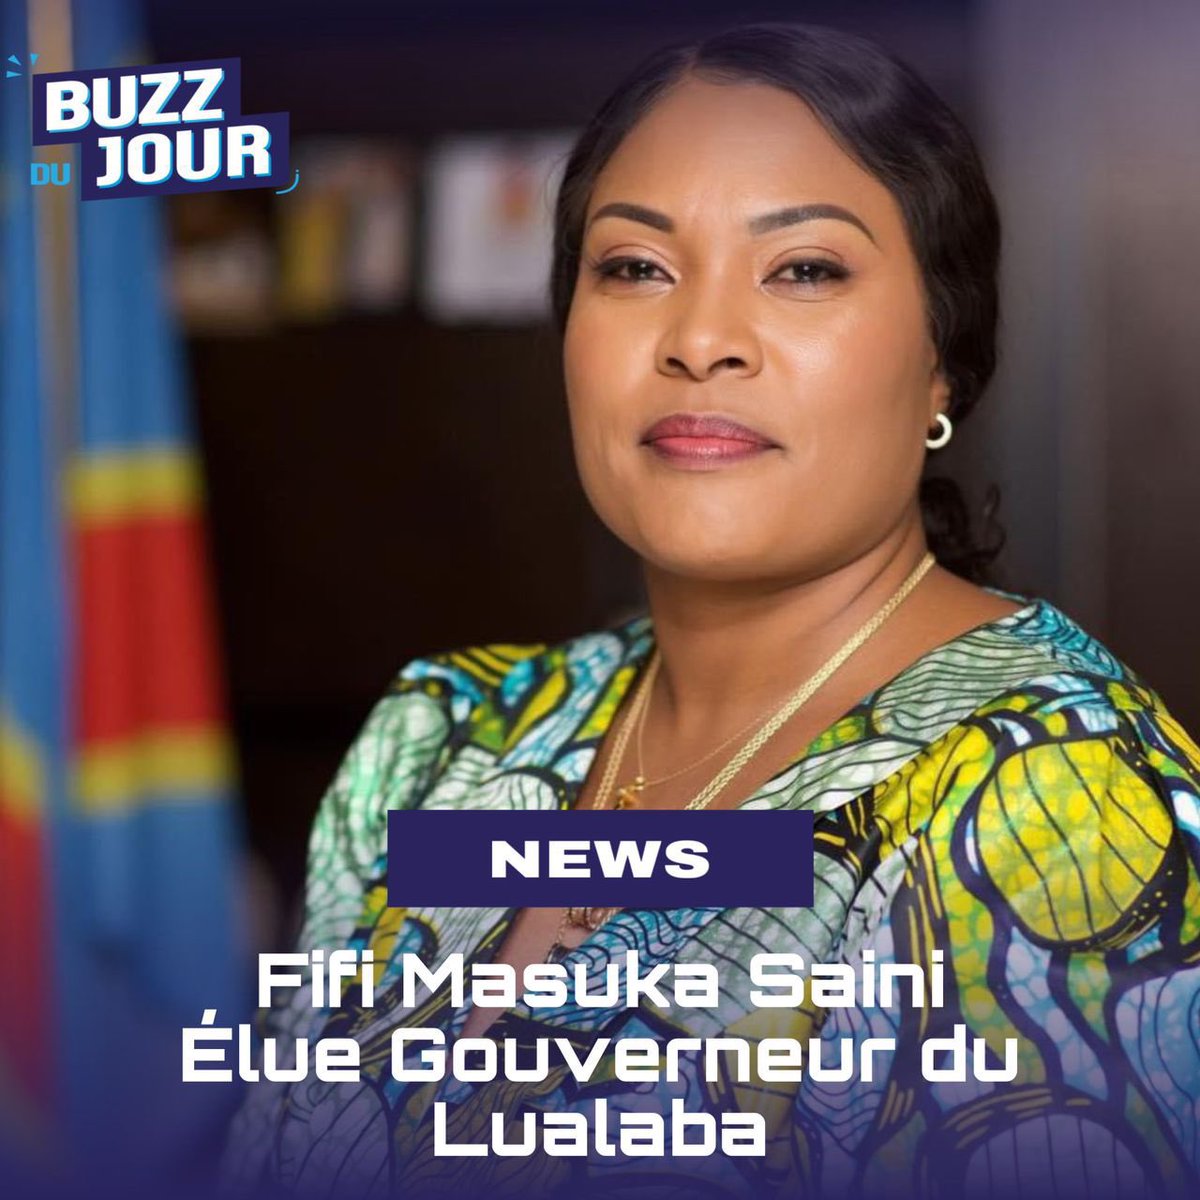 La Fille unique de la RDC, @FifiMasukaSaini
Députée Provinciale
Députée Nationale 
Sénatrice 
Gouverneure du Lualaba 
Suppléants, tous Membres de sa famille.